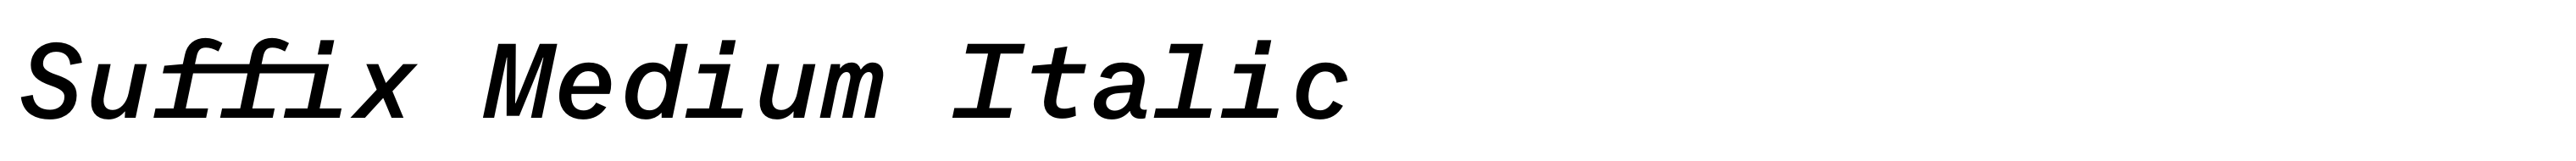 Suffix Medium Italic